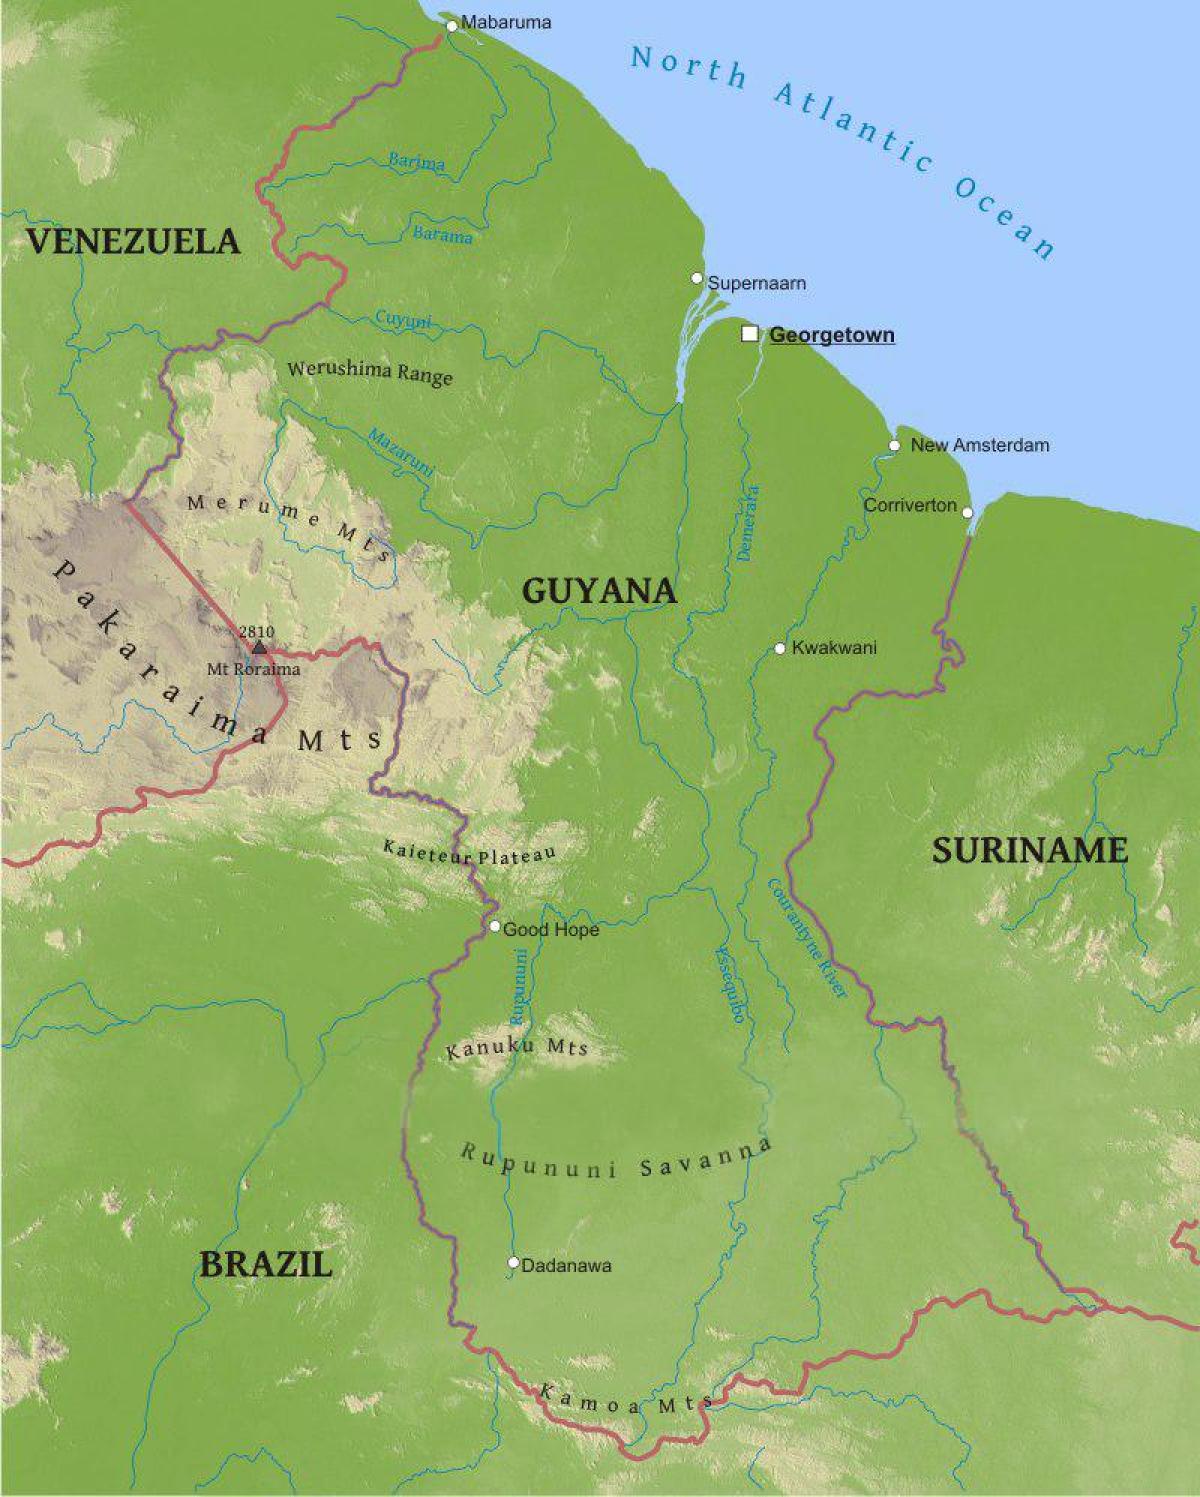 Guyana haritası alçak kıyı ovaları gösteren 